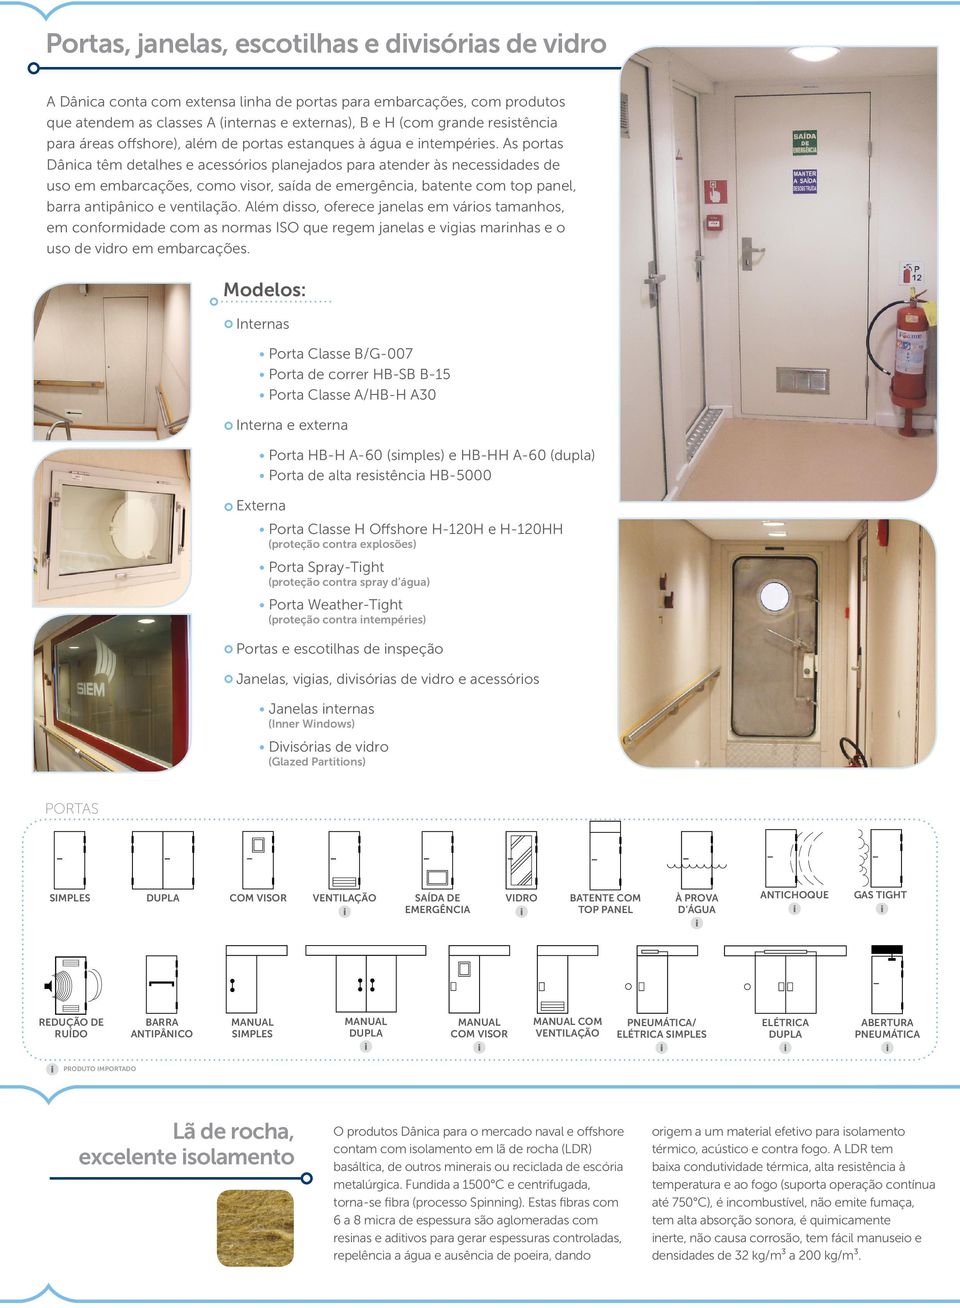 As portas Dânica têm detalhes e acessórios planejados para atender às necessidades de uso em embarcações, como visor, saída de emergência, batente com top panel, barra antipânico e ventilação.